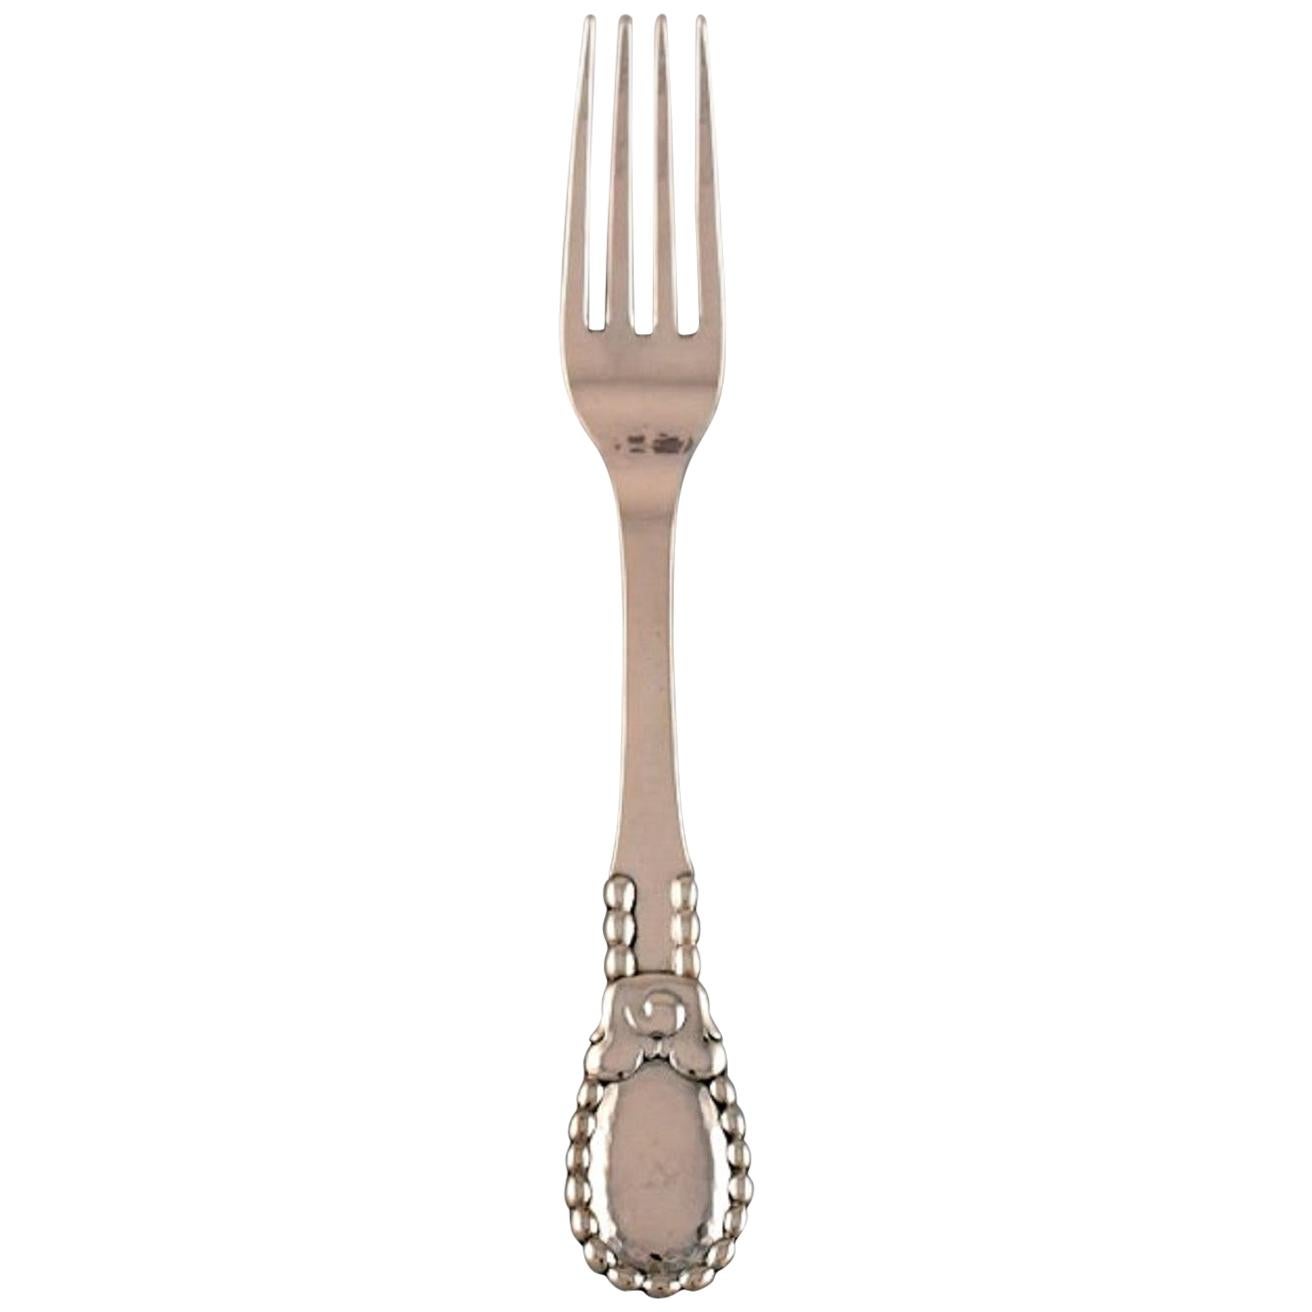 Evald Nielsen Number 13 Dinner Fork in Hammered Silver, 1920's For Sale